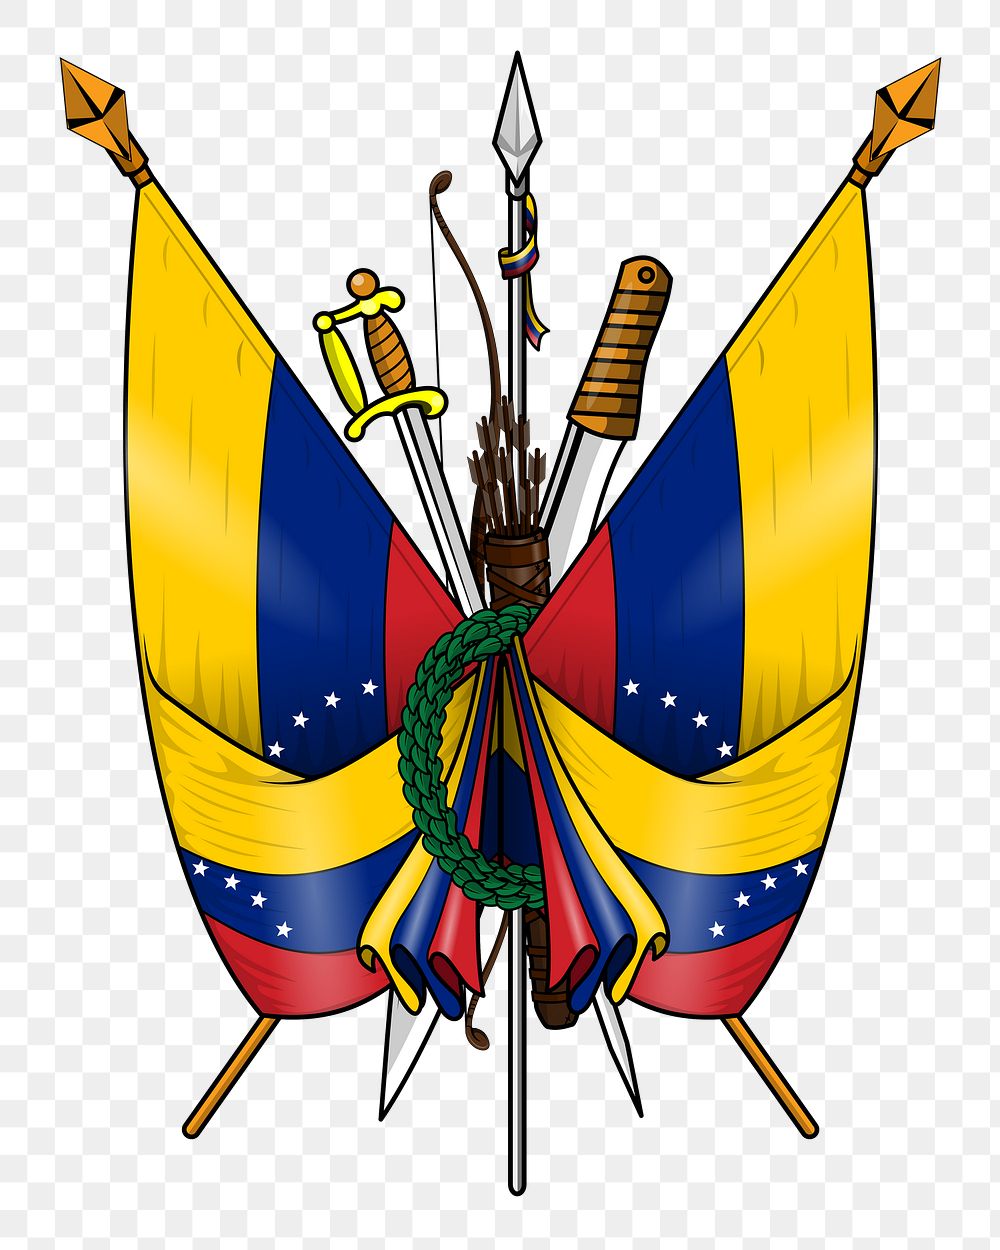 Venezuela crest png illustration, transparent background. Free public domain CC0 image.